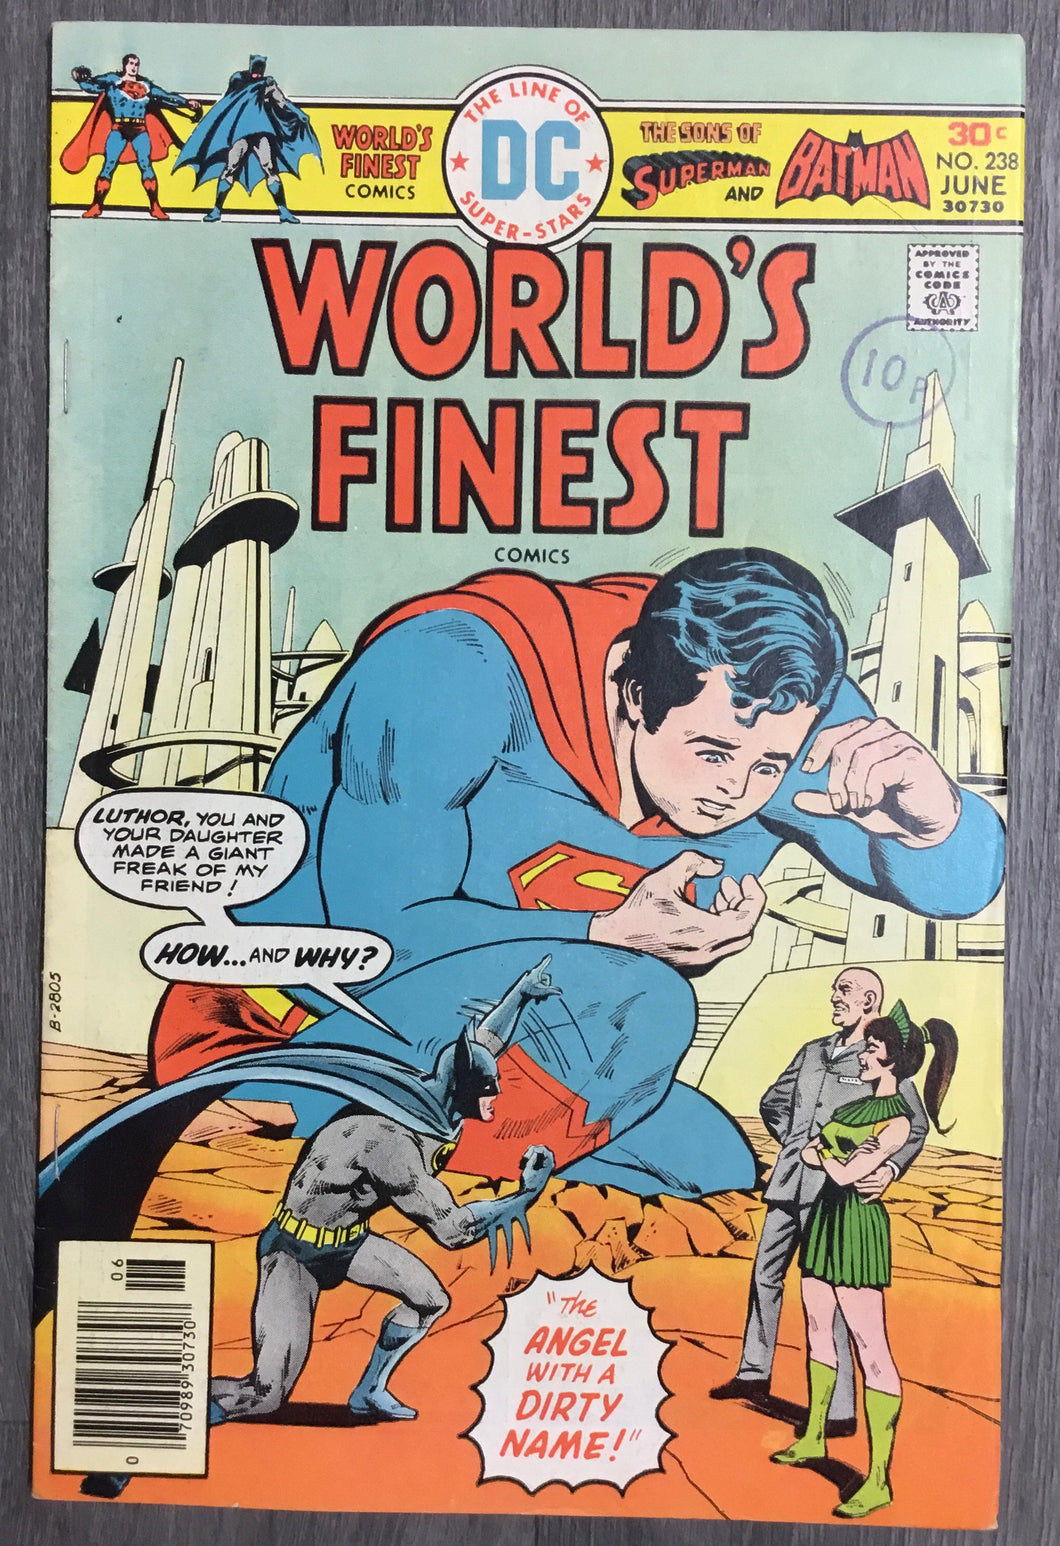 World’s Finest Comics No. #238 1976 DC Comics